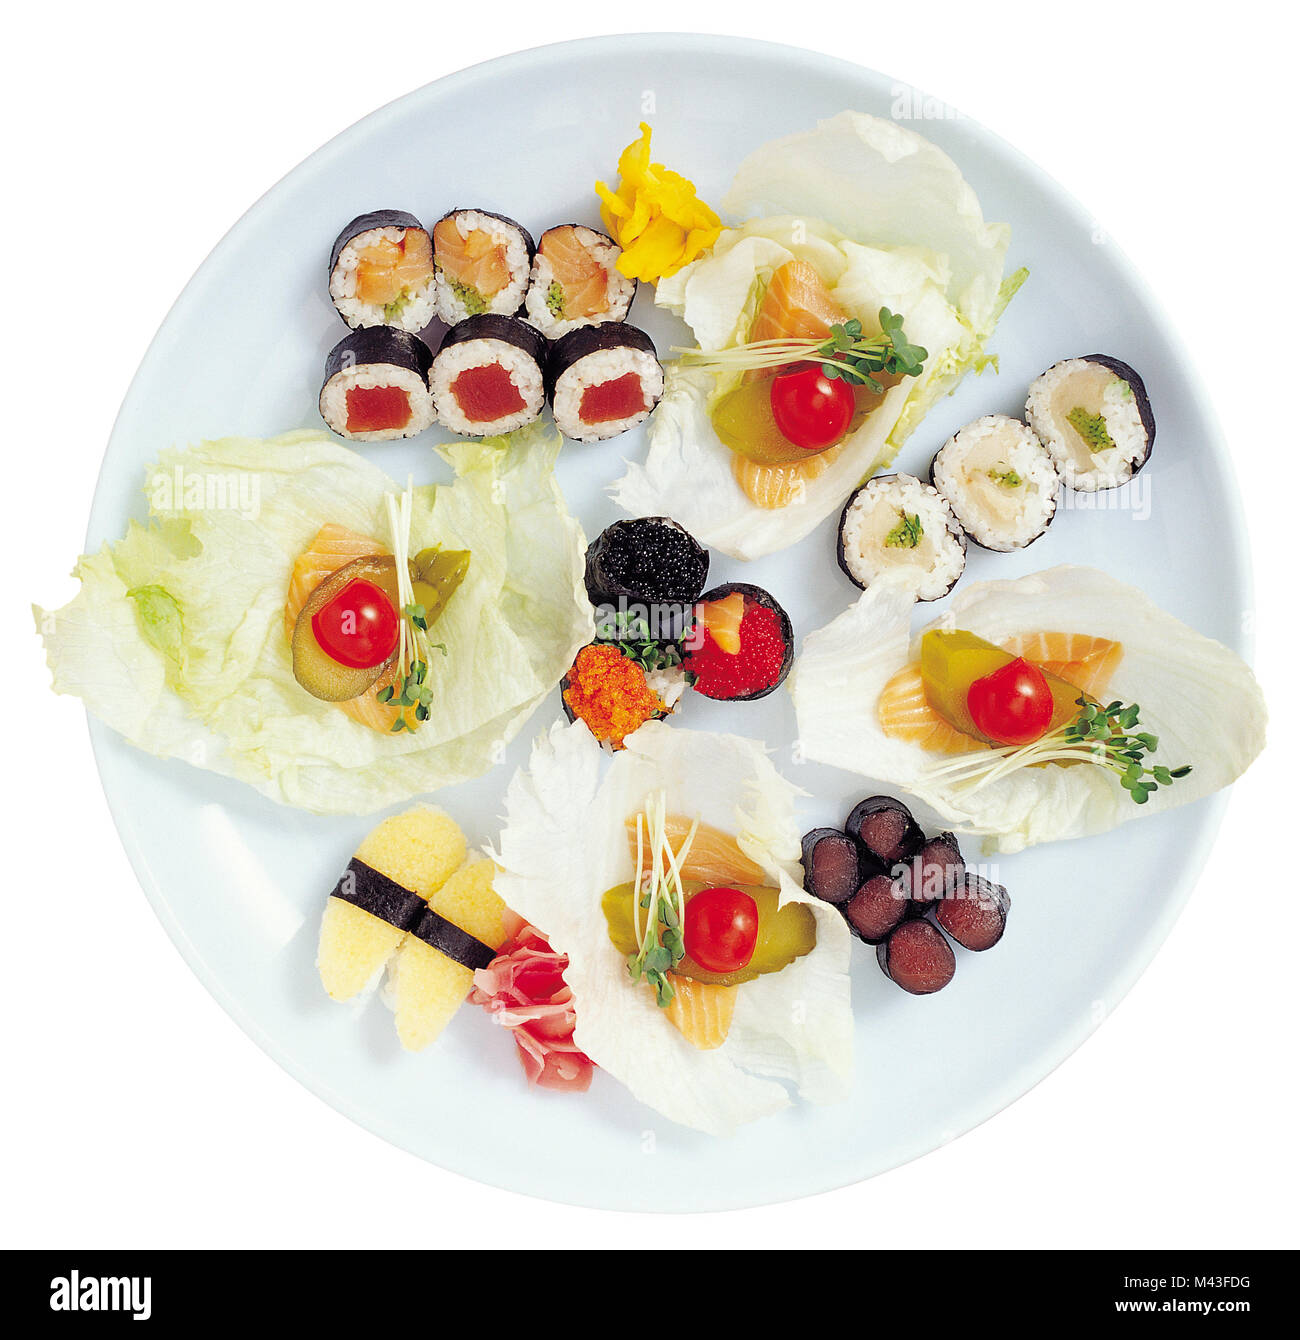 Sushi set isolated on white background Stock Photo